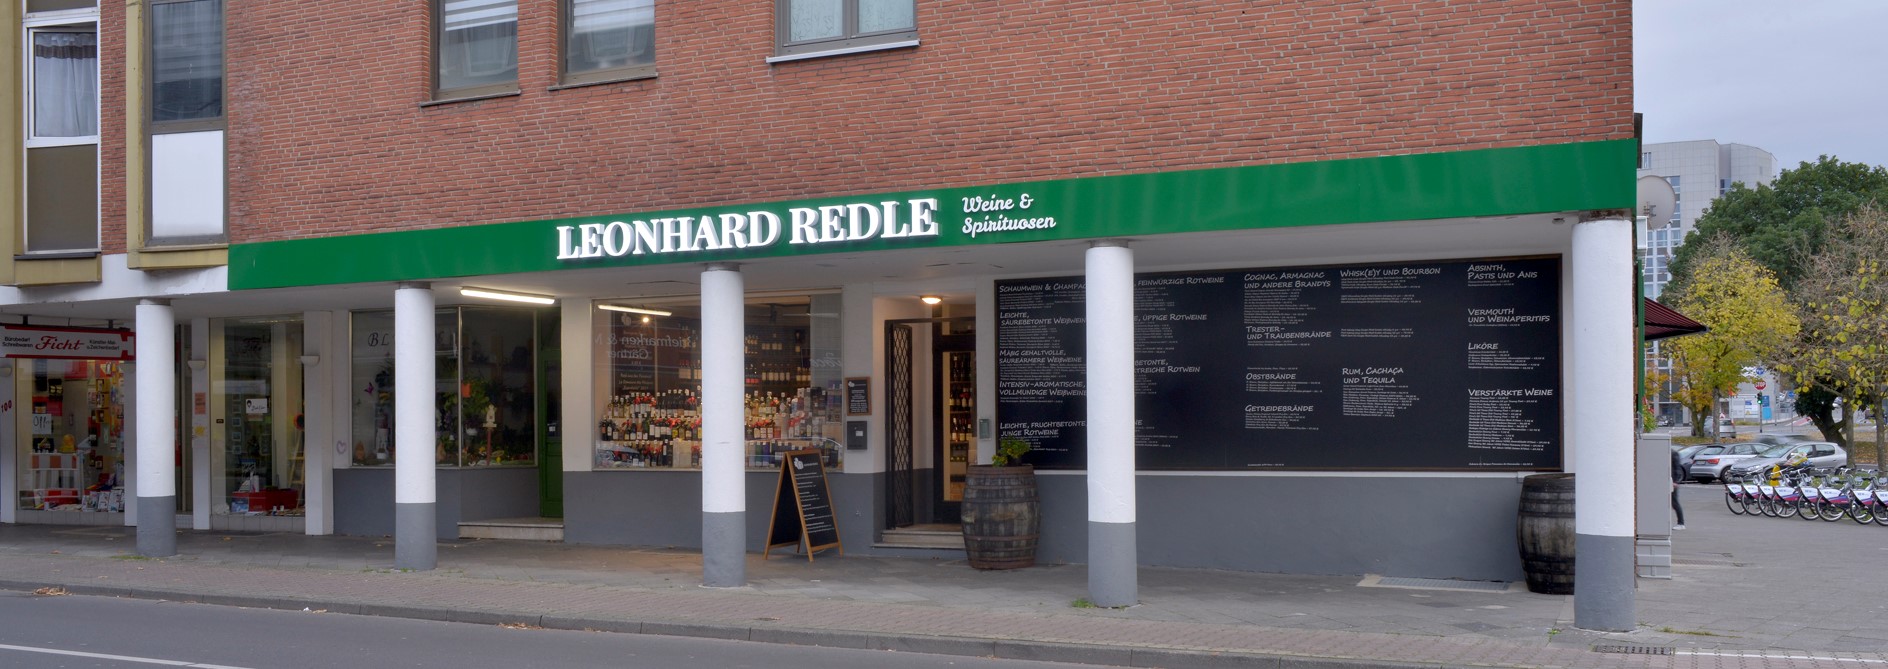 Titelbild des Unternehmens: LEONHARD REDLE - Weine & Spirituosen e.K. in Mönchengladbach